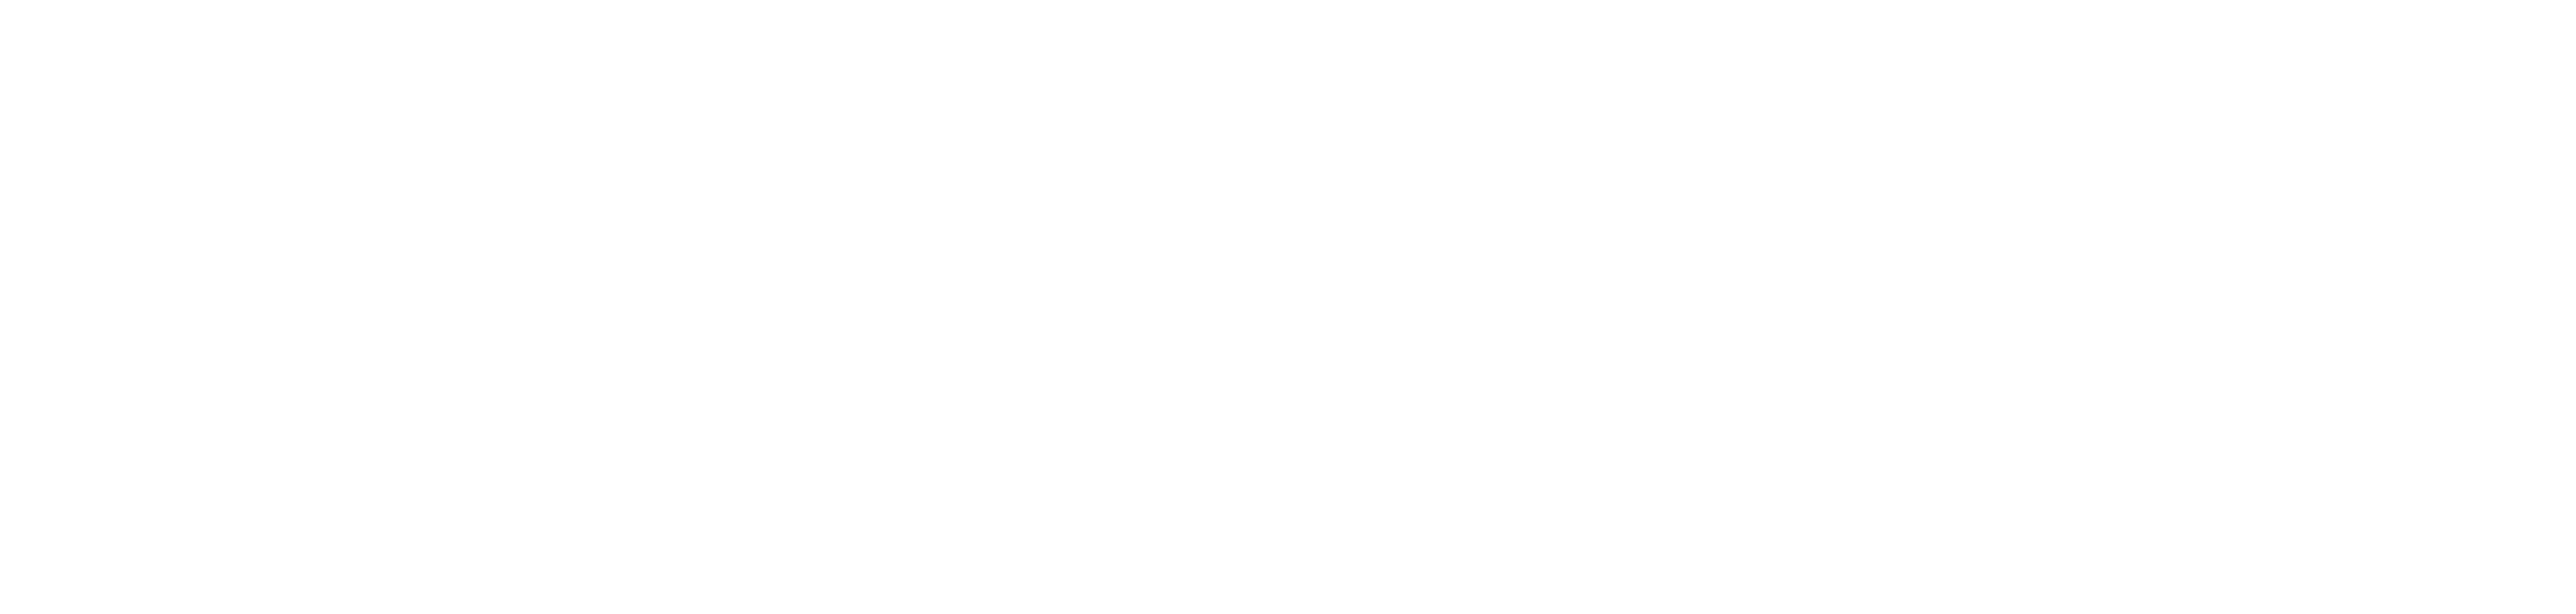 Logo horizontal do Shopping de Cruzeiros em versão negativa